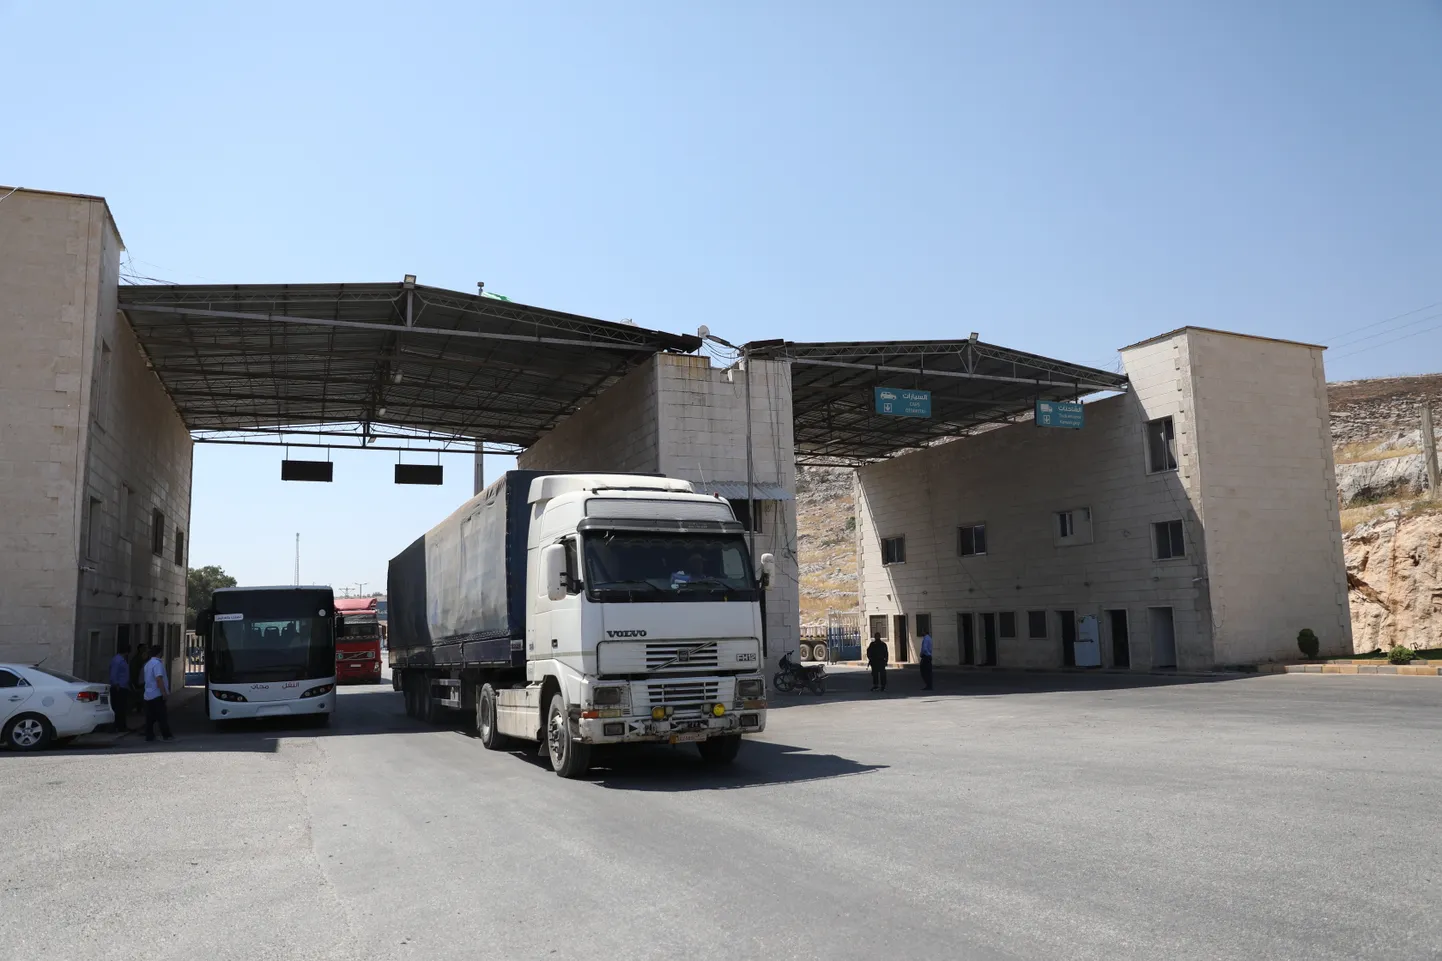 Rahusvahelise humanitaarabiga veokid sõitmas läbi Bab al-Hawa piiripunkti Türgist Süüriasse.